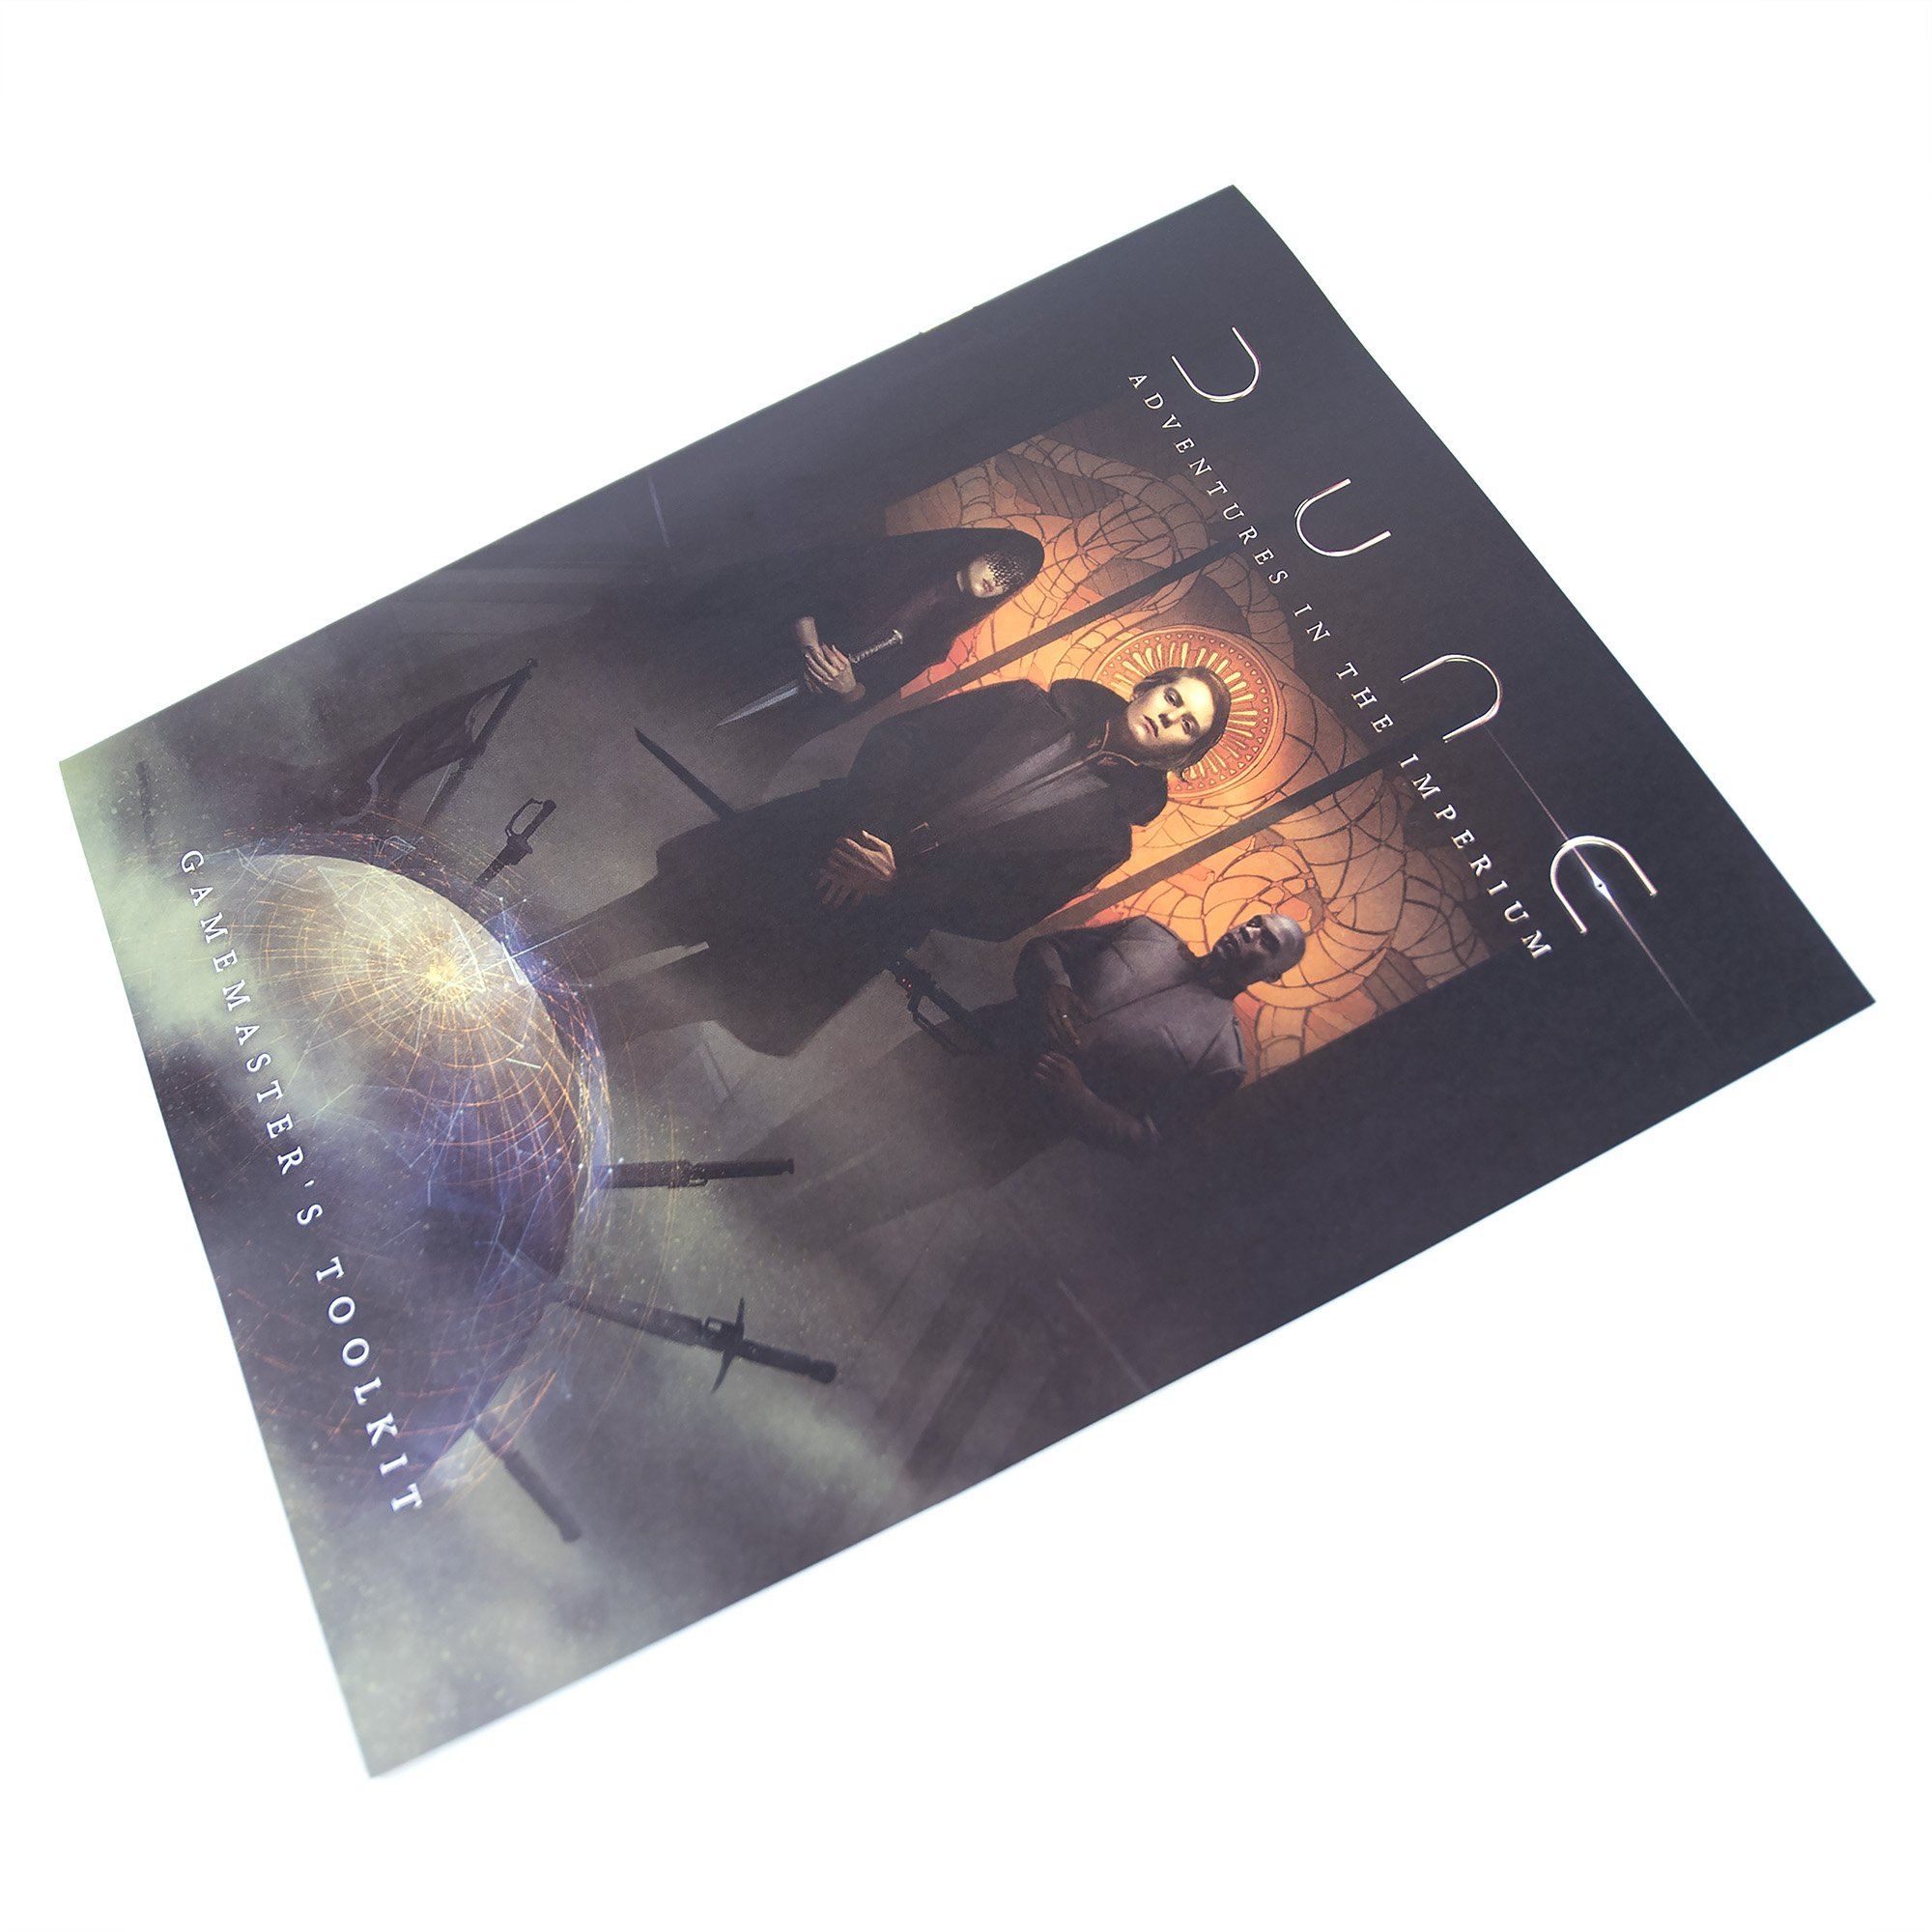 Dune Adventures in the IMPERIUM pdf. Dune adventures in the imperium